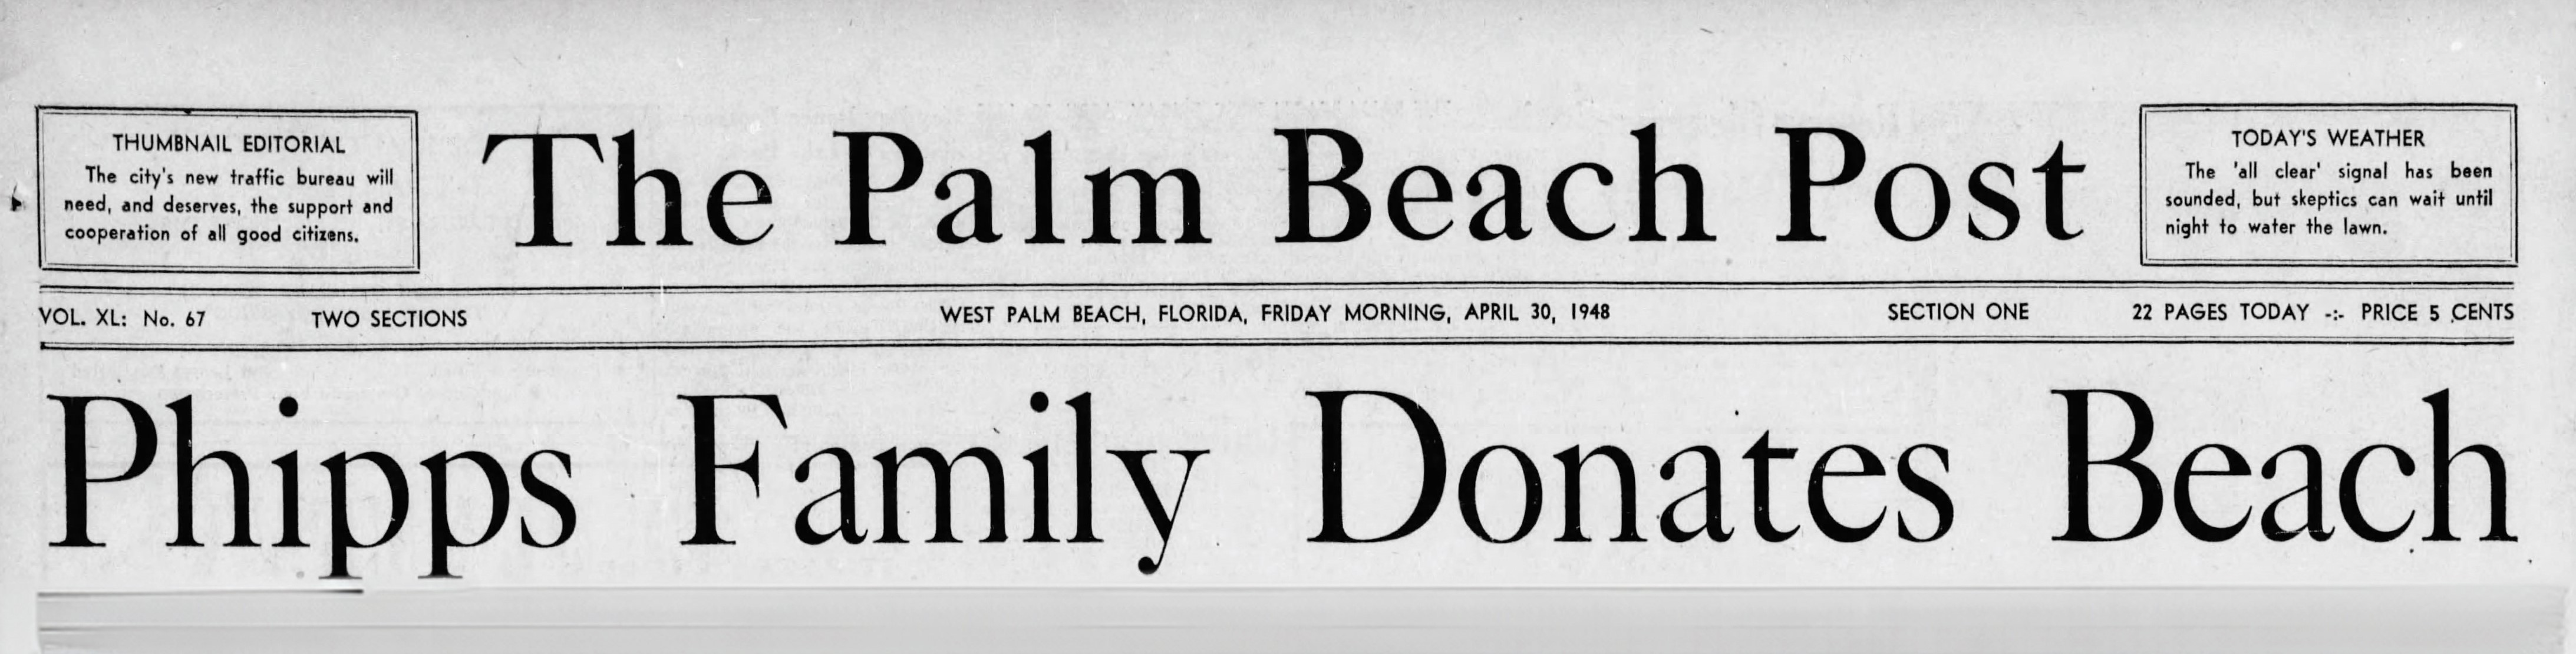 The Palm Beach Post, 1948